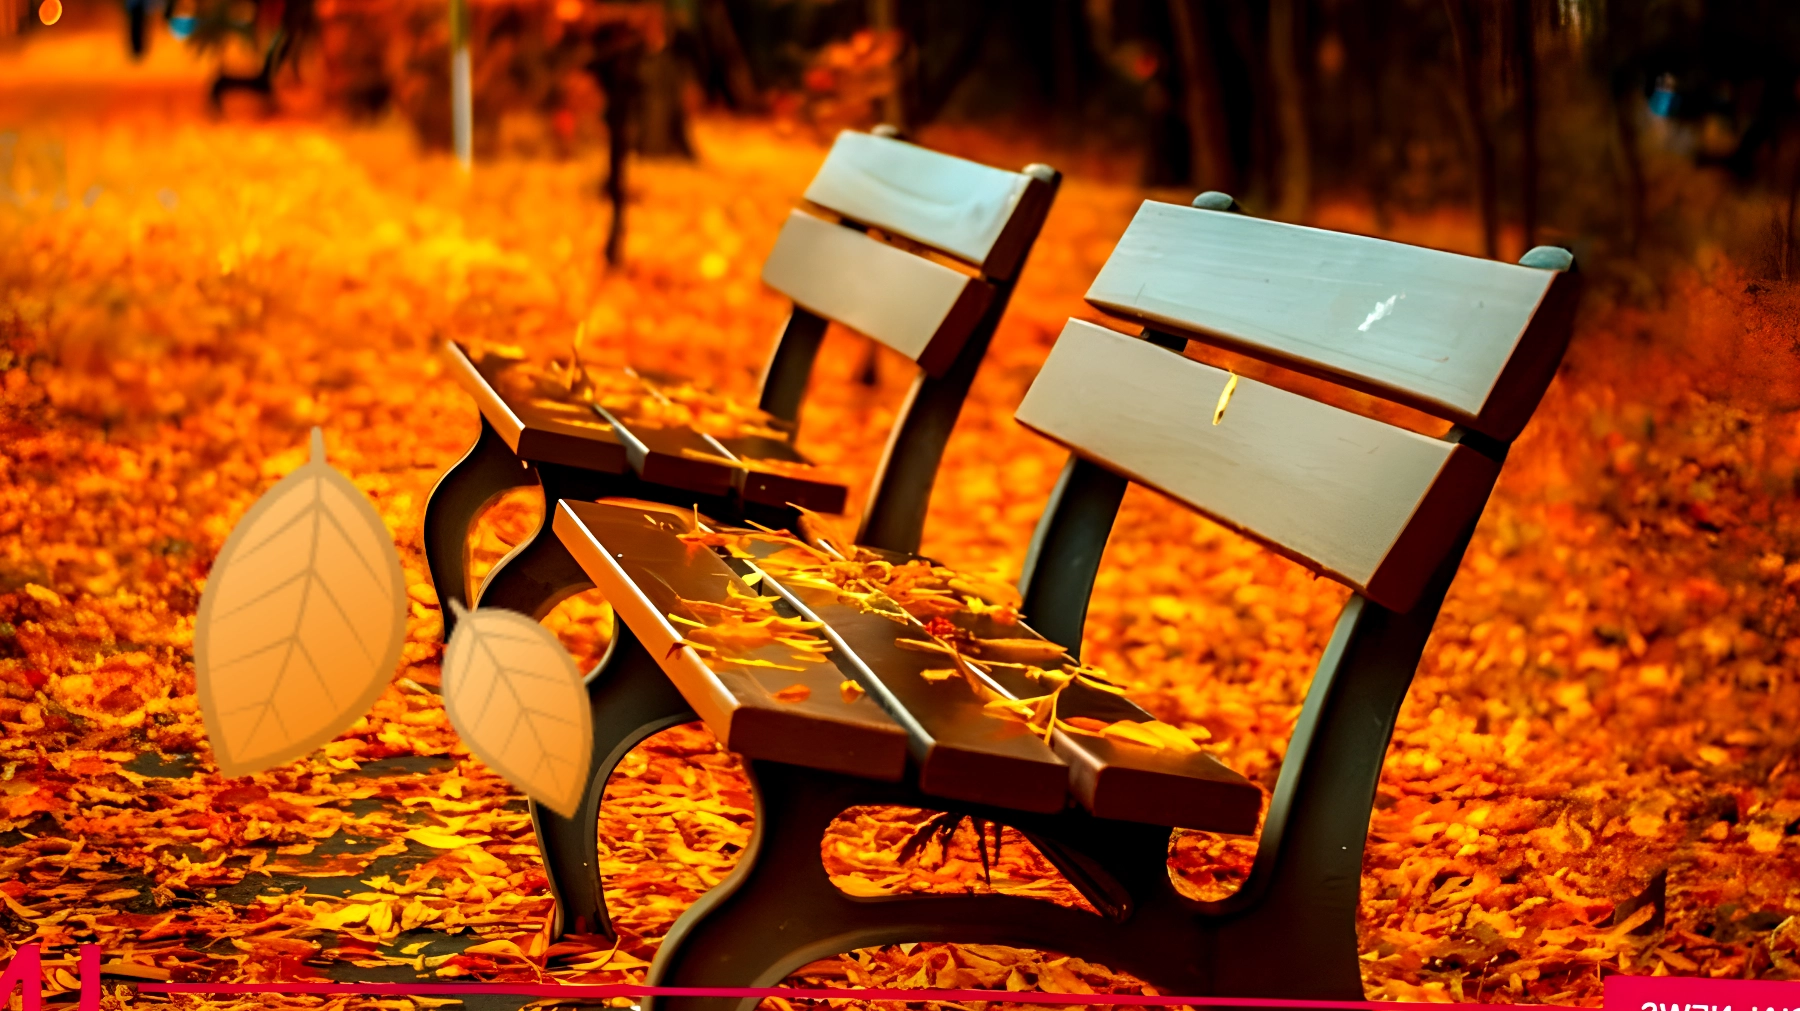 Le 10 frasi che ti faranno sentire il buongiorno all'autunno come mai prima d'ora